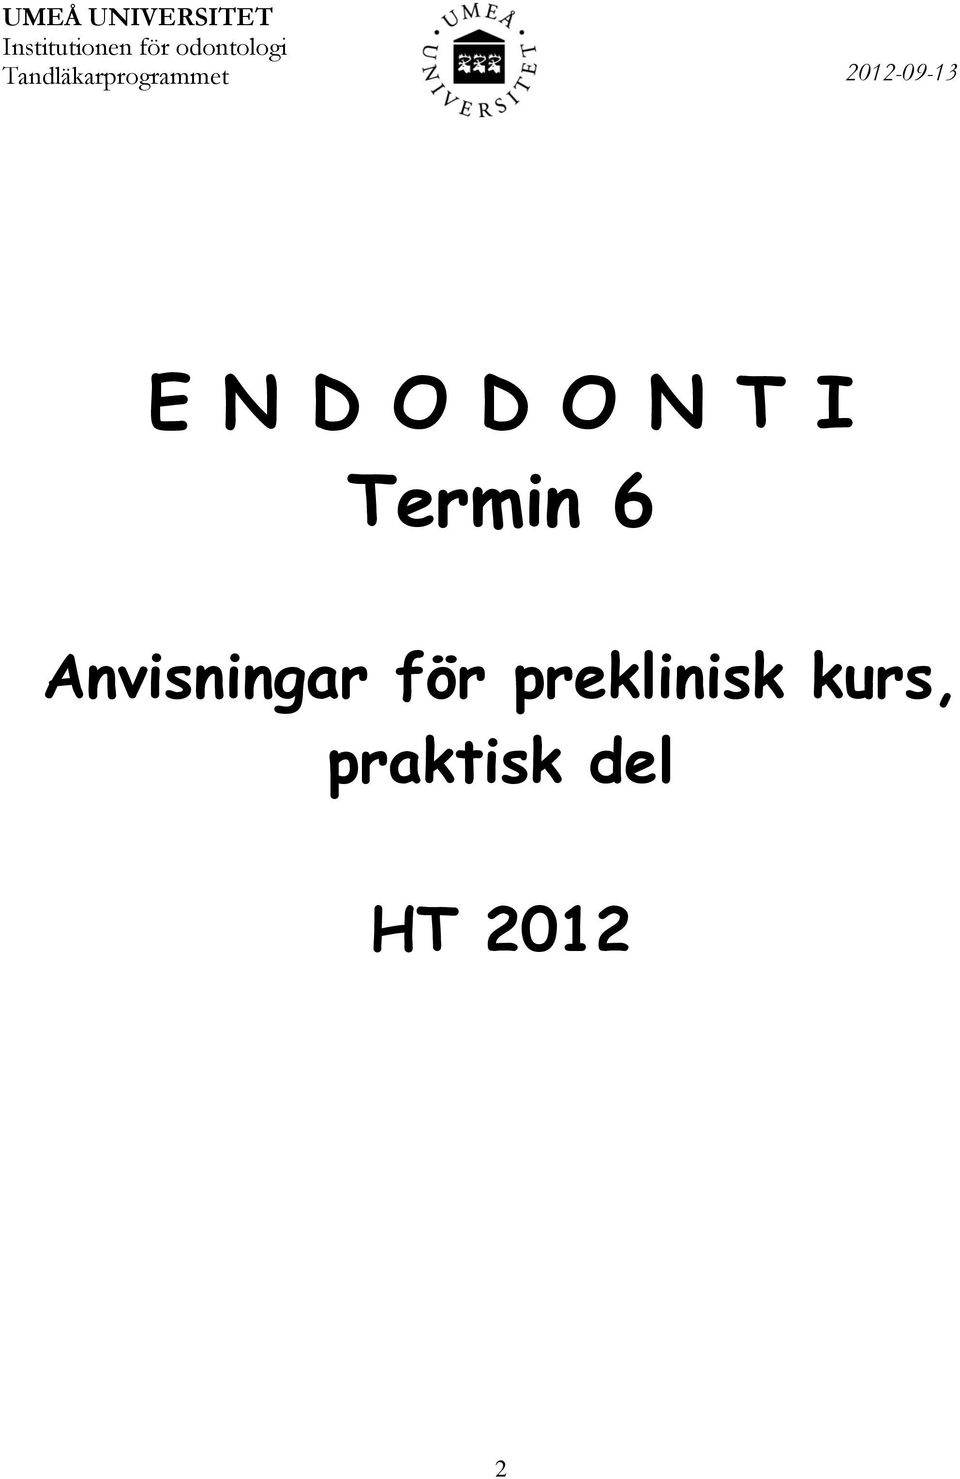 2012-09-13 E N D O D O N T I Termin 6